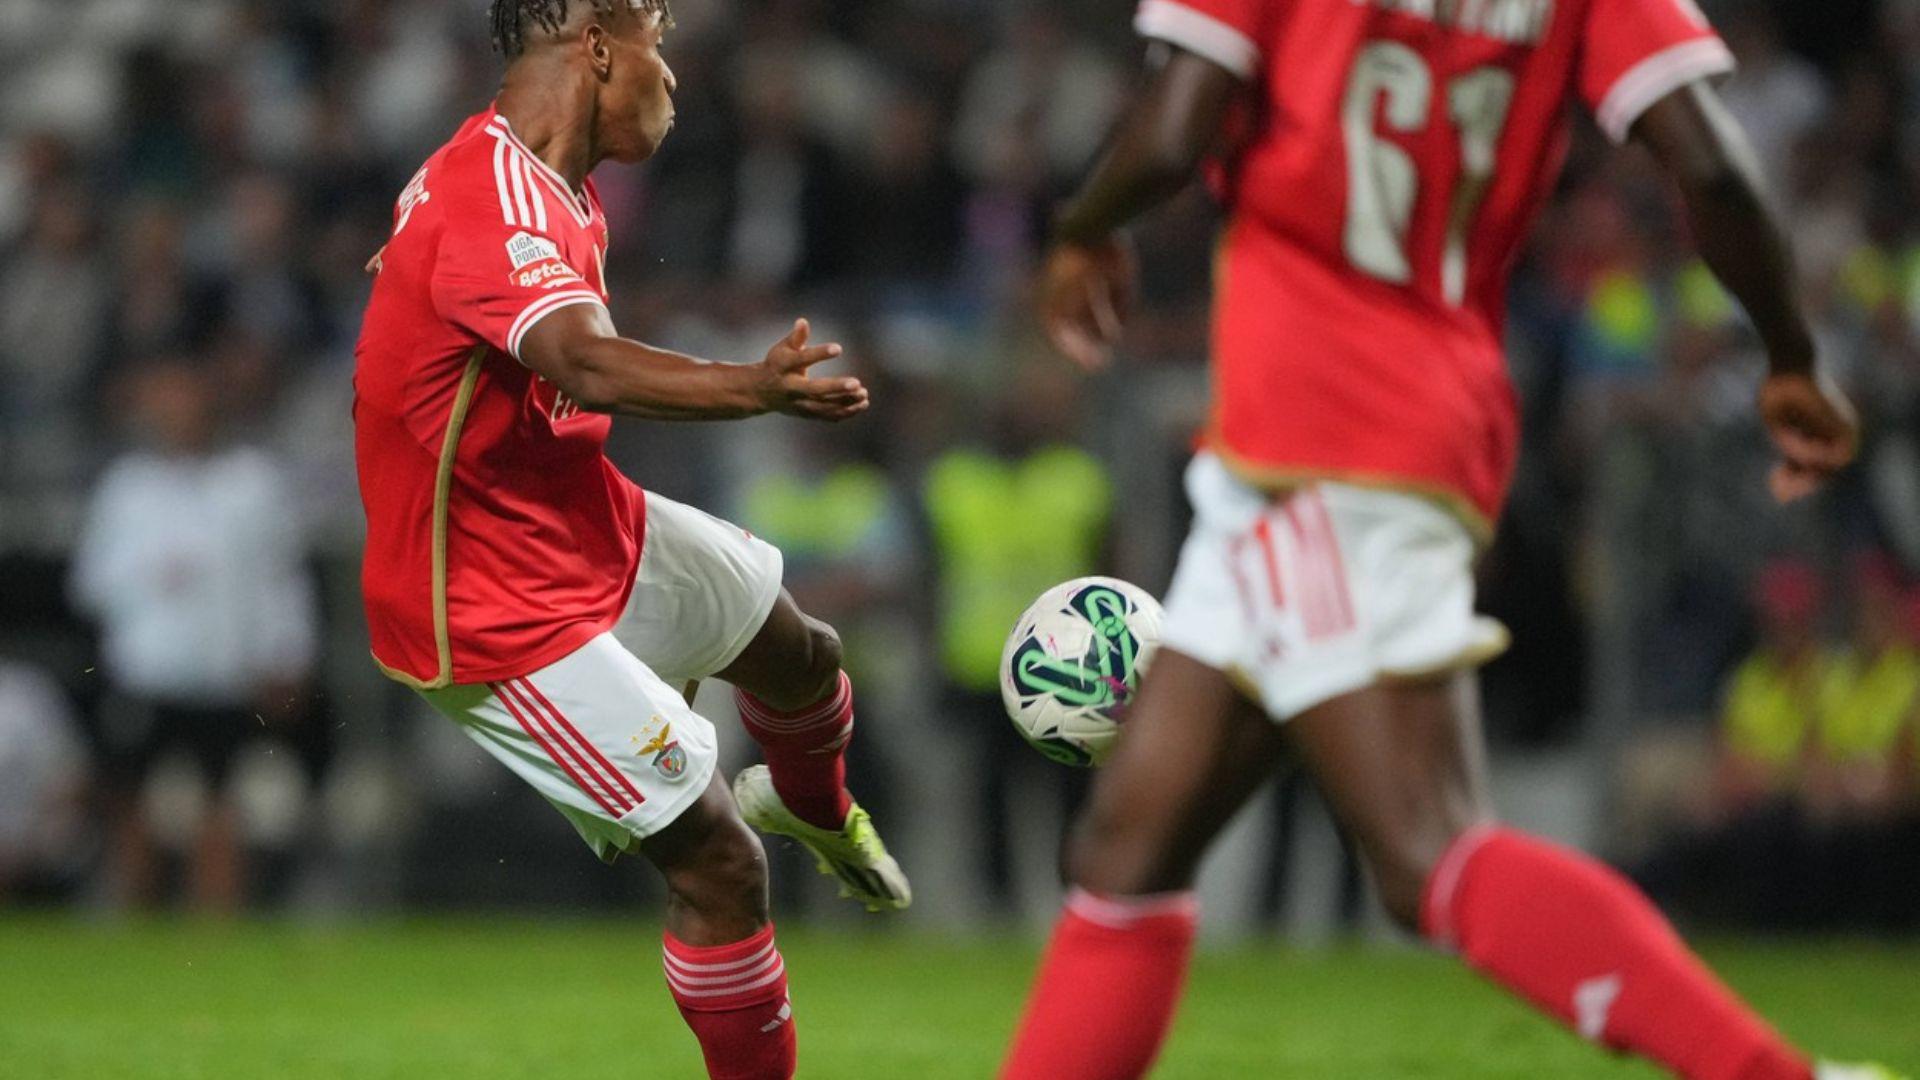 Benfica – Porto, e derby-ul săptămânii în fotbalul european. Vezi vineri, de la 22:15, live și exclusiv în AntenaPLAY